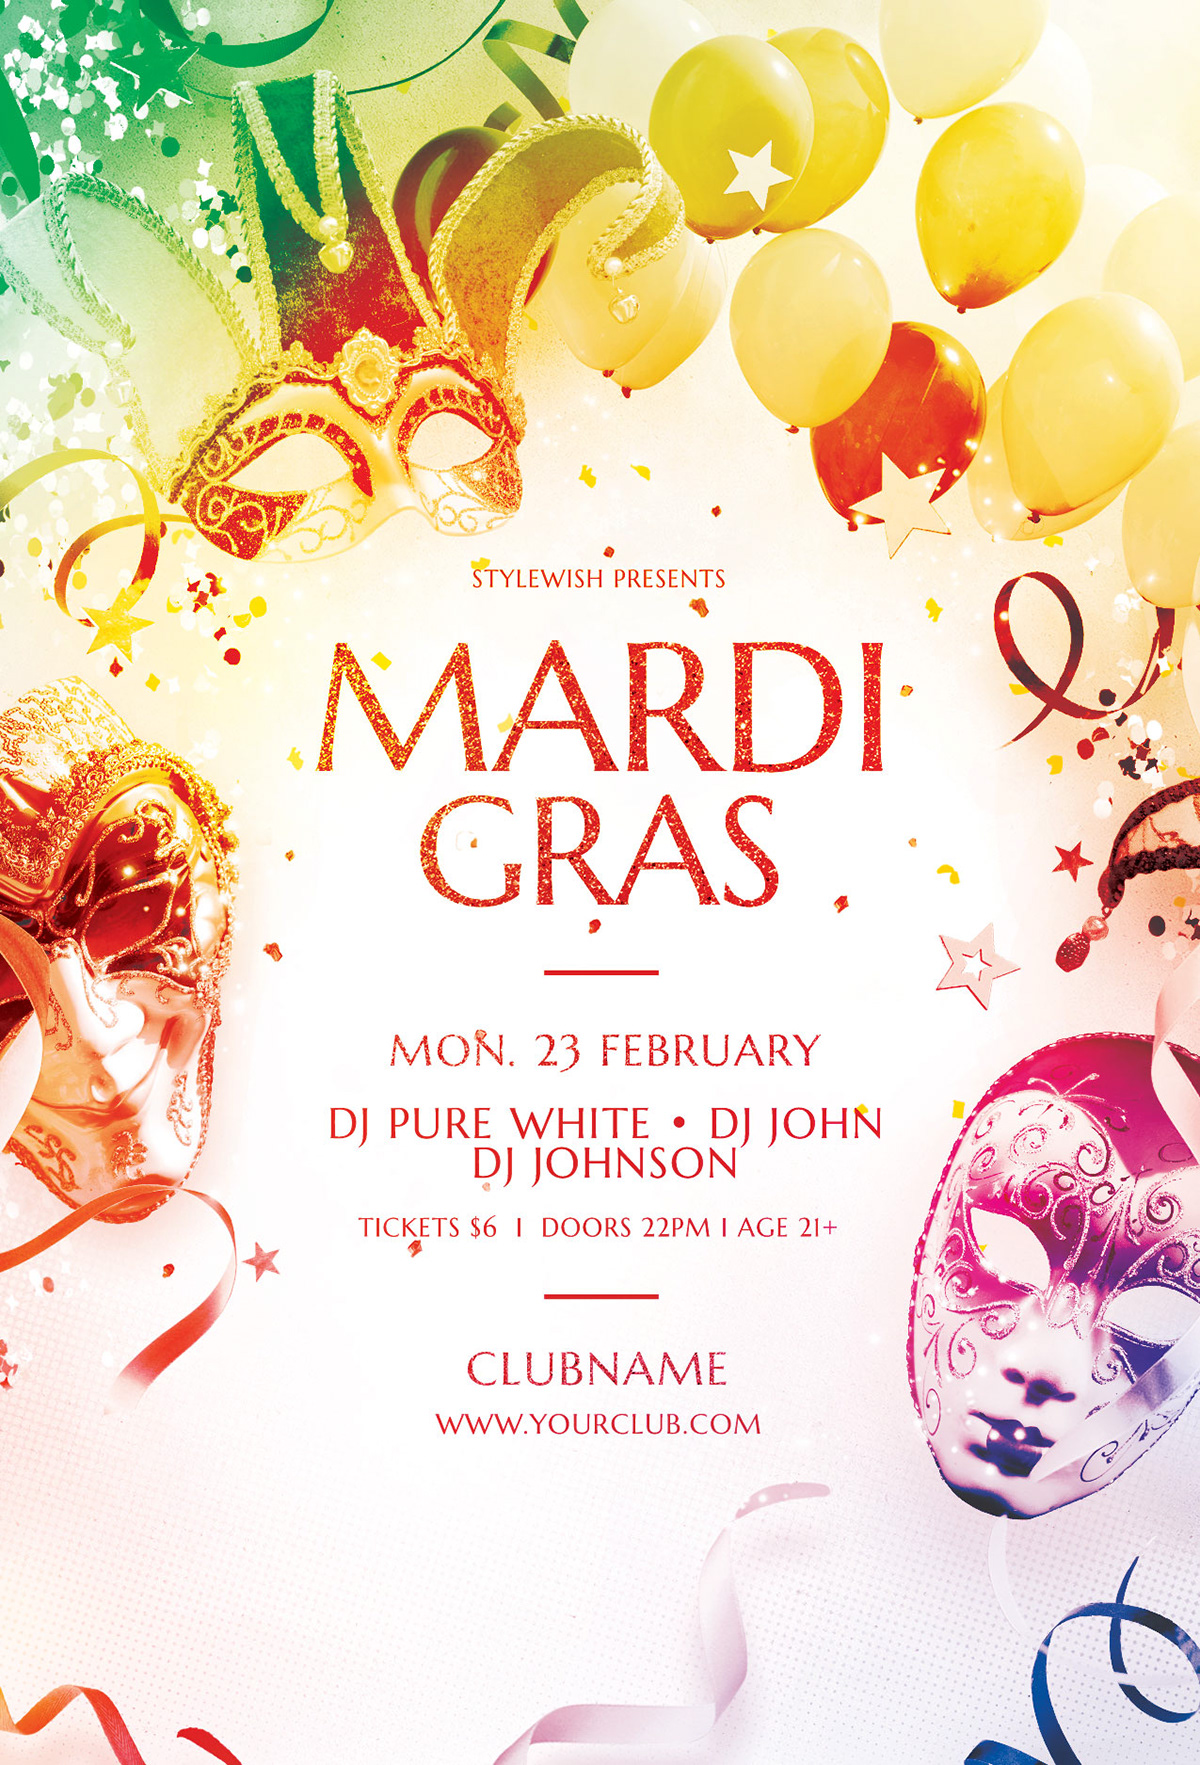 Carnival mardi gras flyer poster confetti Masquerade festive celebration colorful colors